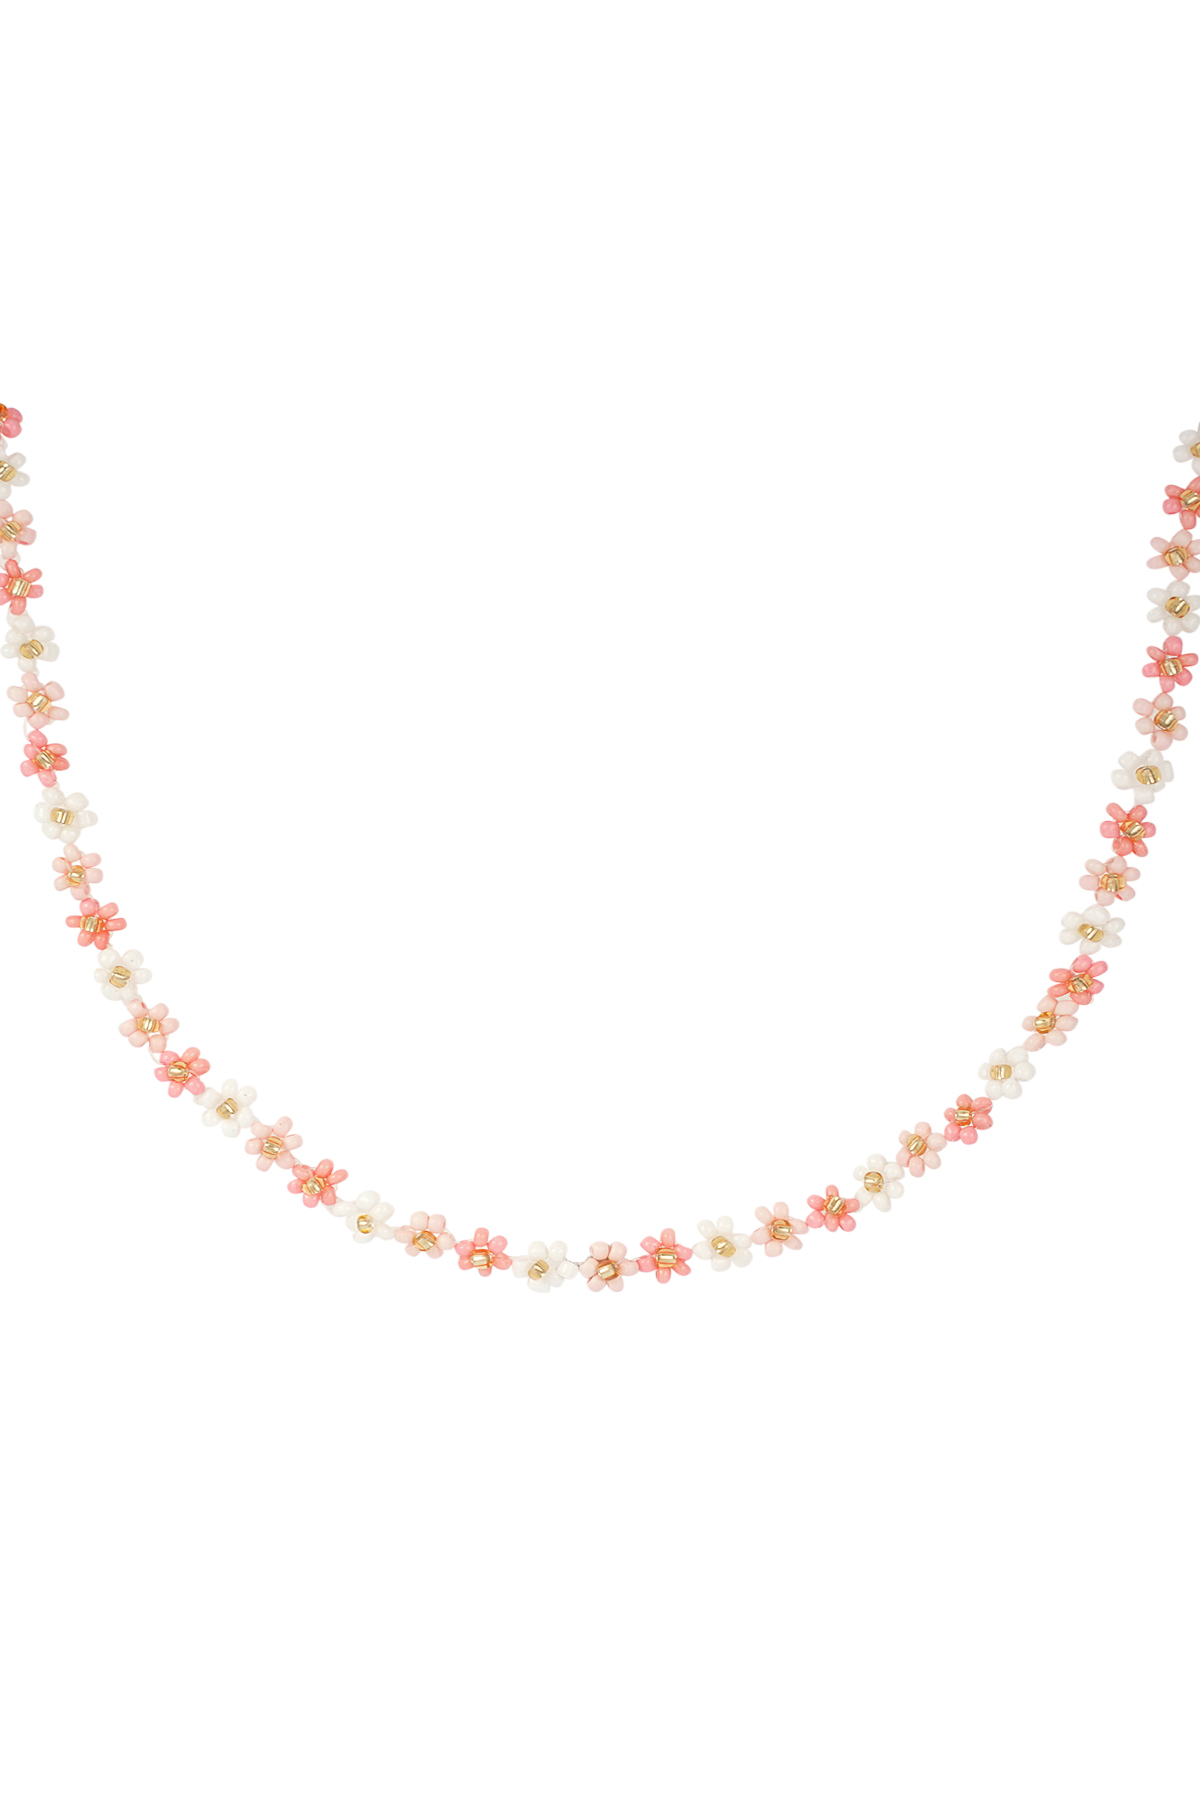 Collar floral power - rosa claro h5 